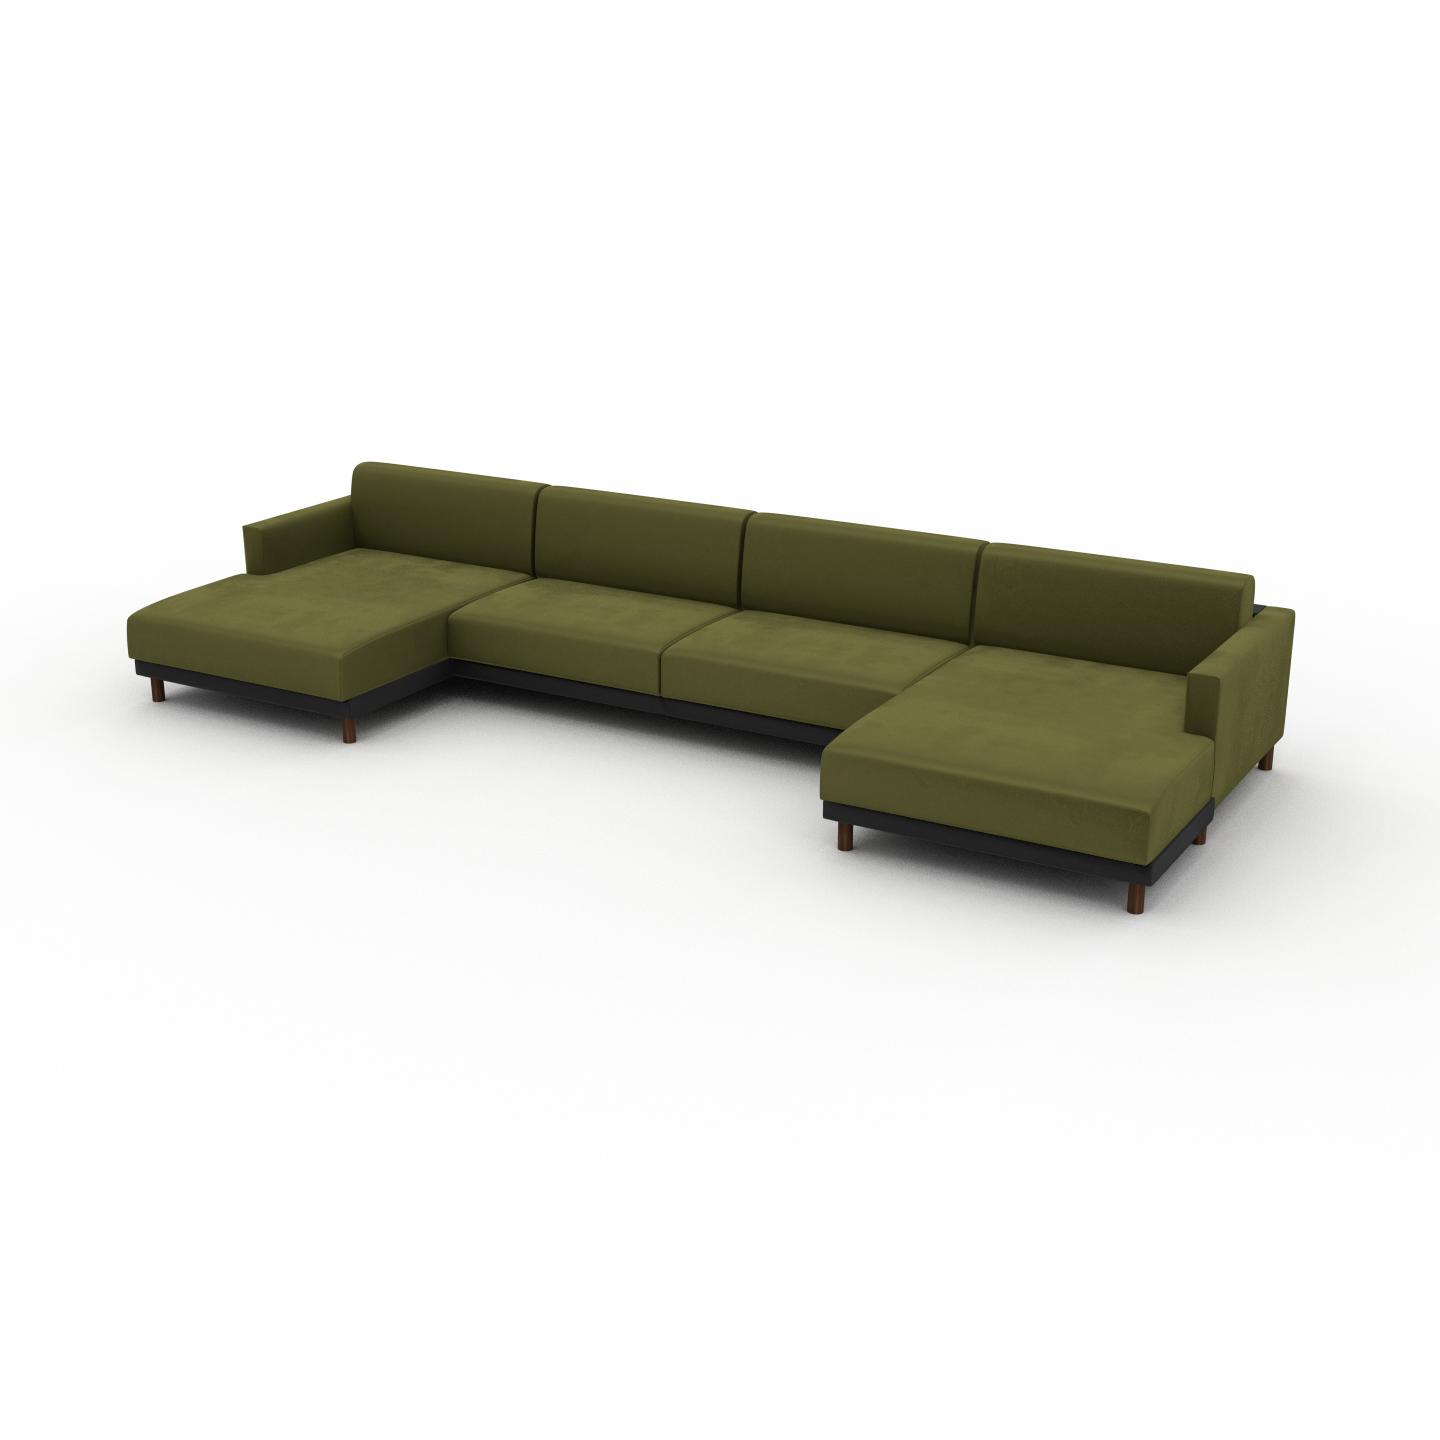 MYCS Sofa Samt Olivgrün - Moderne Designer-Couch: Hochwertige Qualität, einzigartiges Design - 424 x 75 x 162 cm, Komplett anpassbar